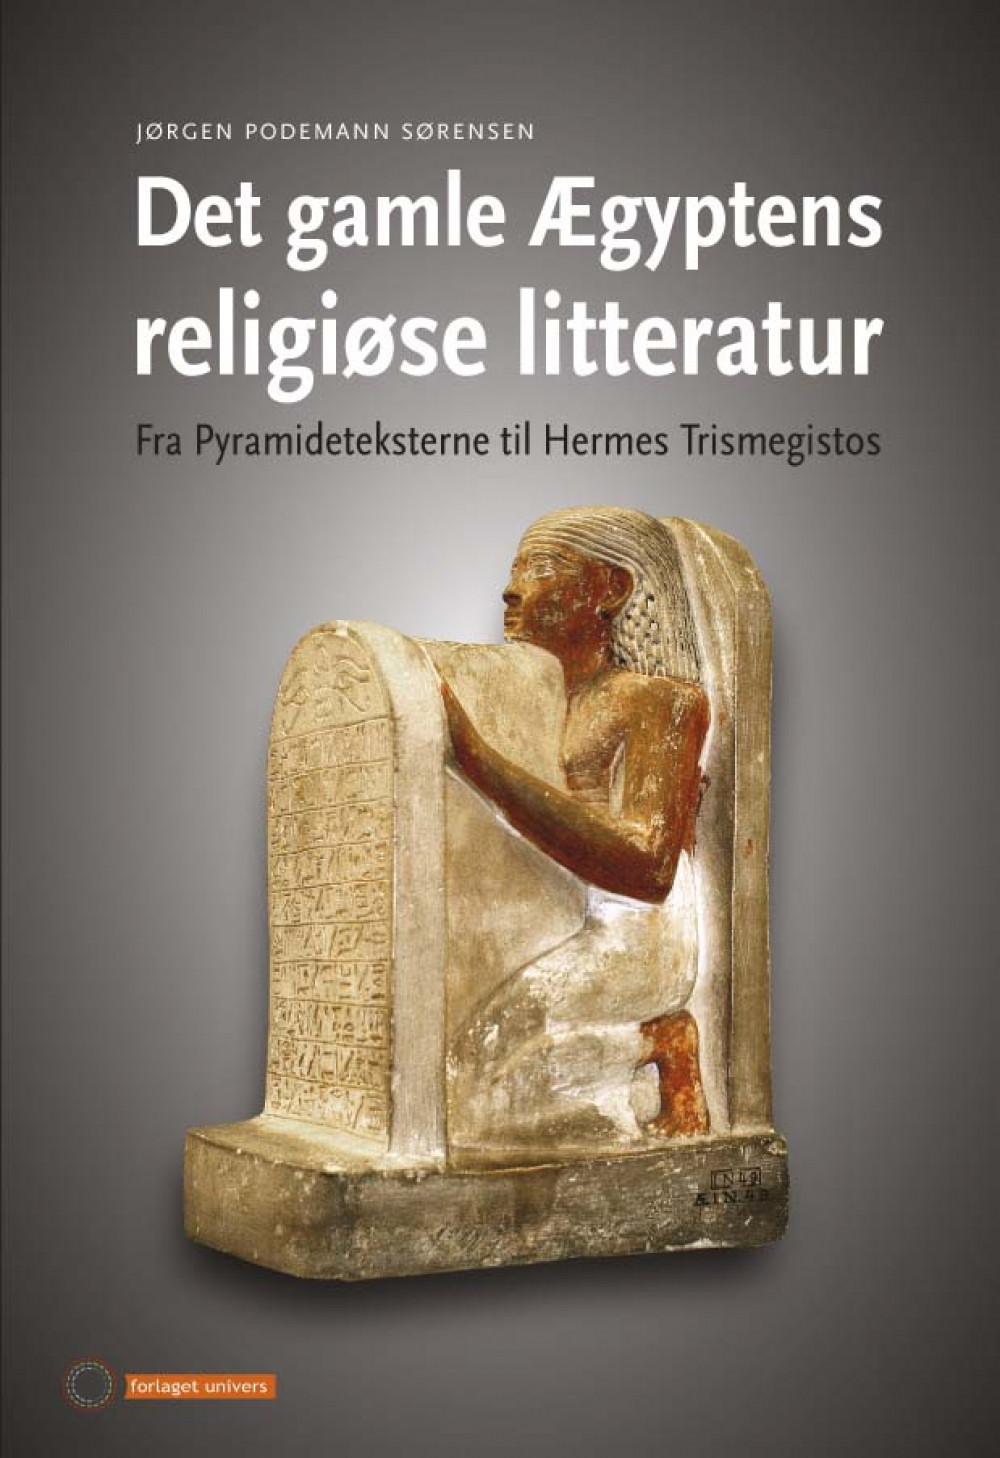 Det gamle Ægyptens religiøse litteratur. Fra Pyramideteksterne til Hermes Trismegistos<br>Læs mere her